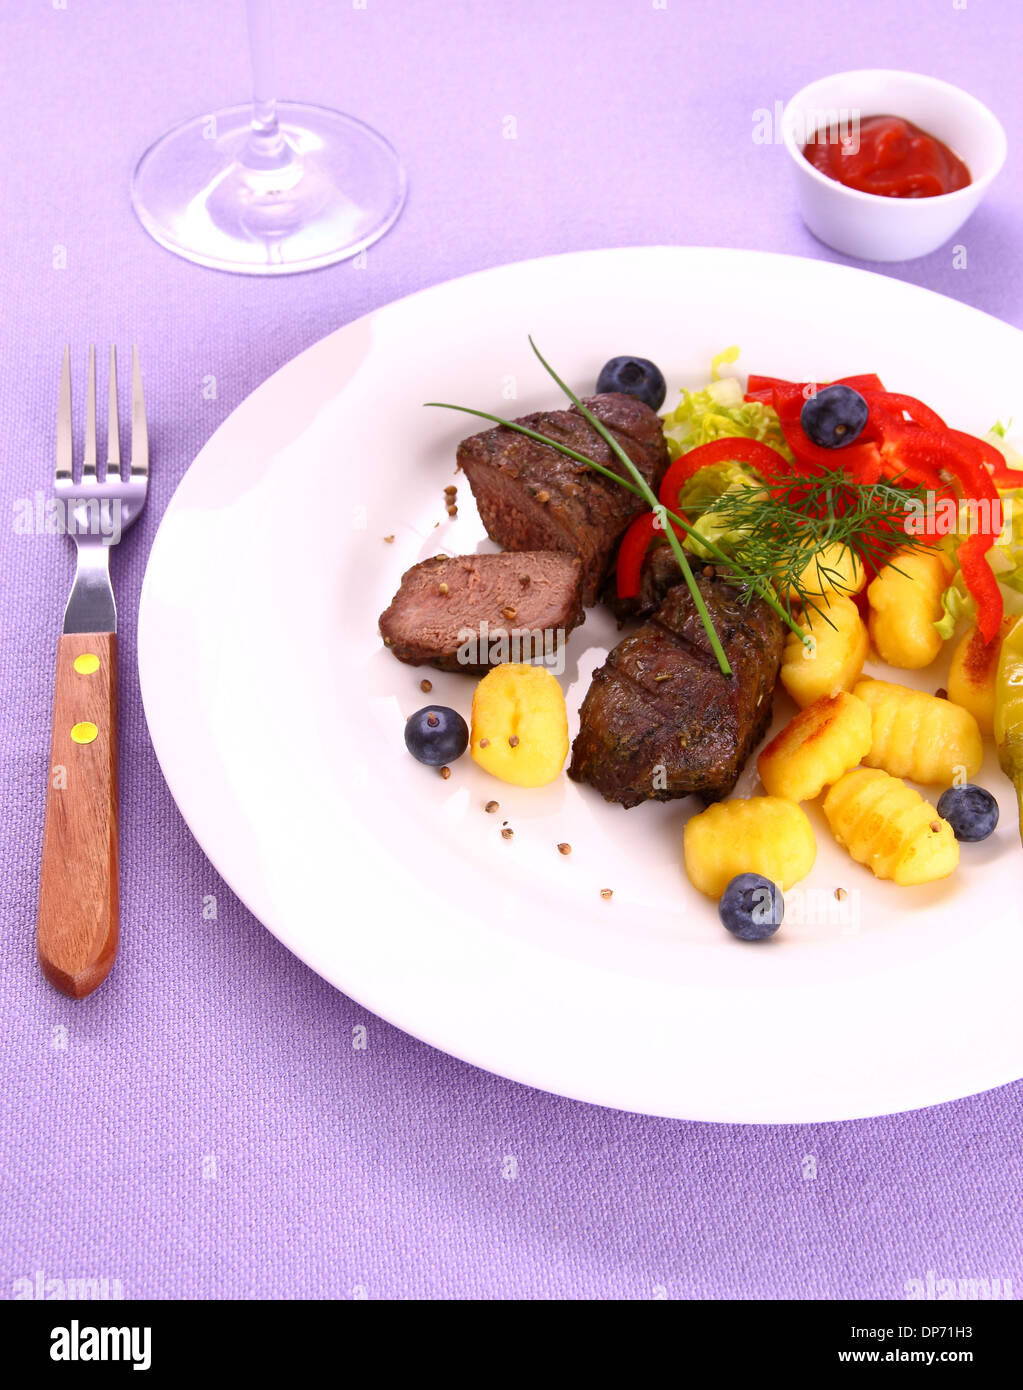 Bistecca di agnello con gli gnocchi, verdure e salsa, vista dall'alto Foto Stock